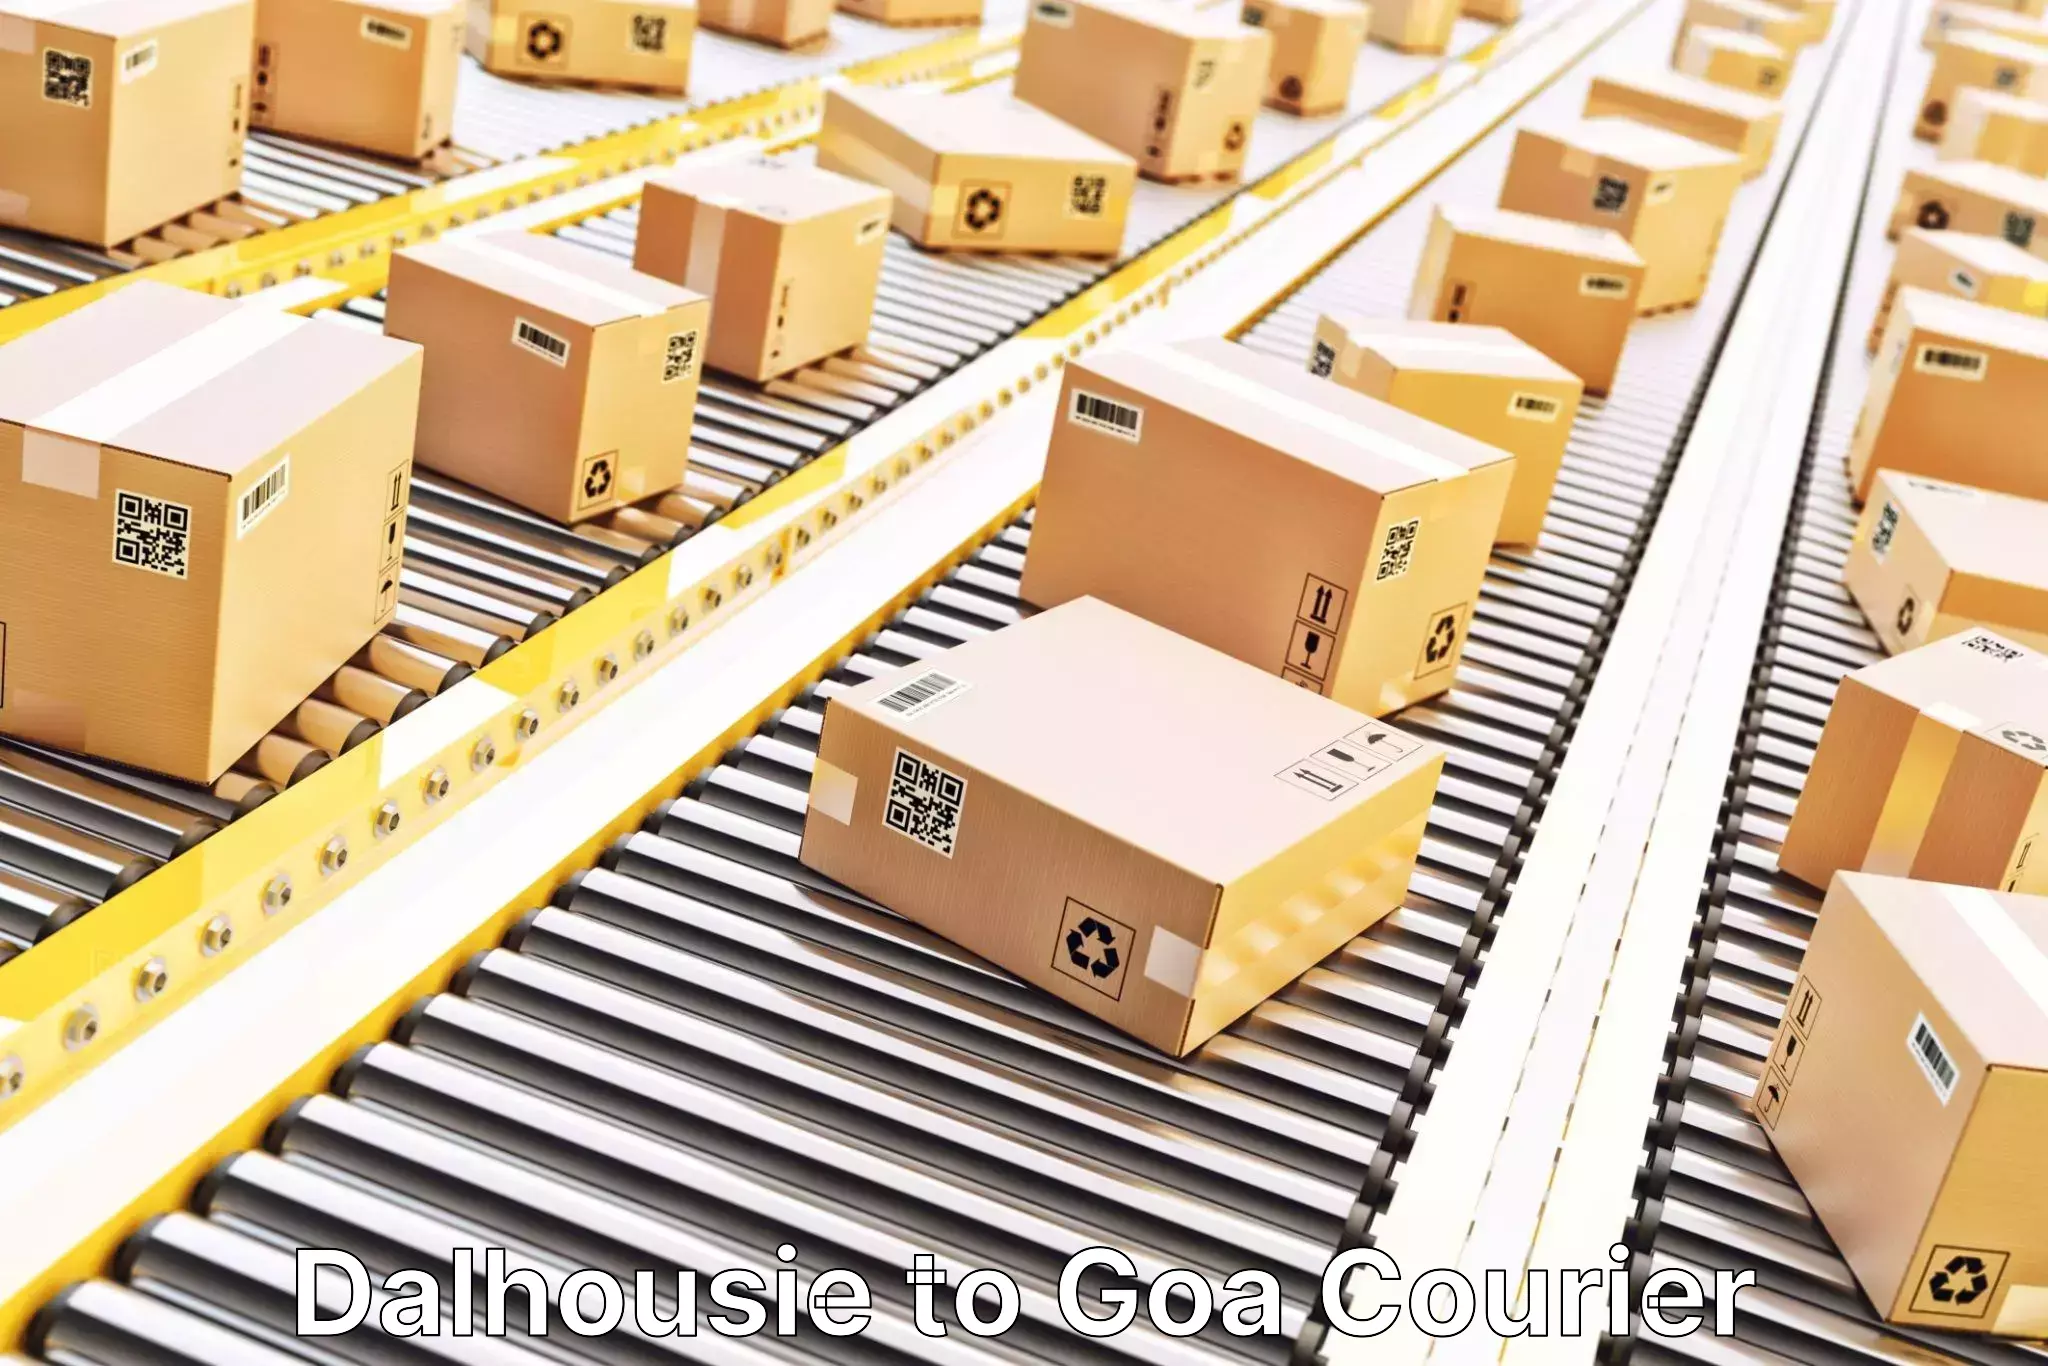 Logistics service provider Dalhousie to Goa University